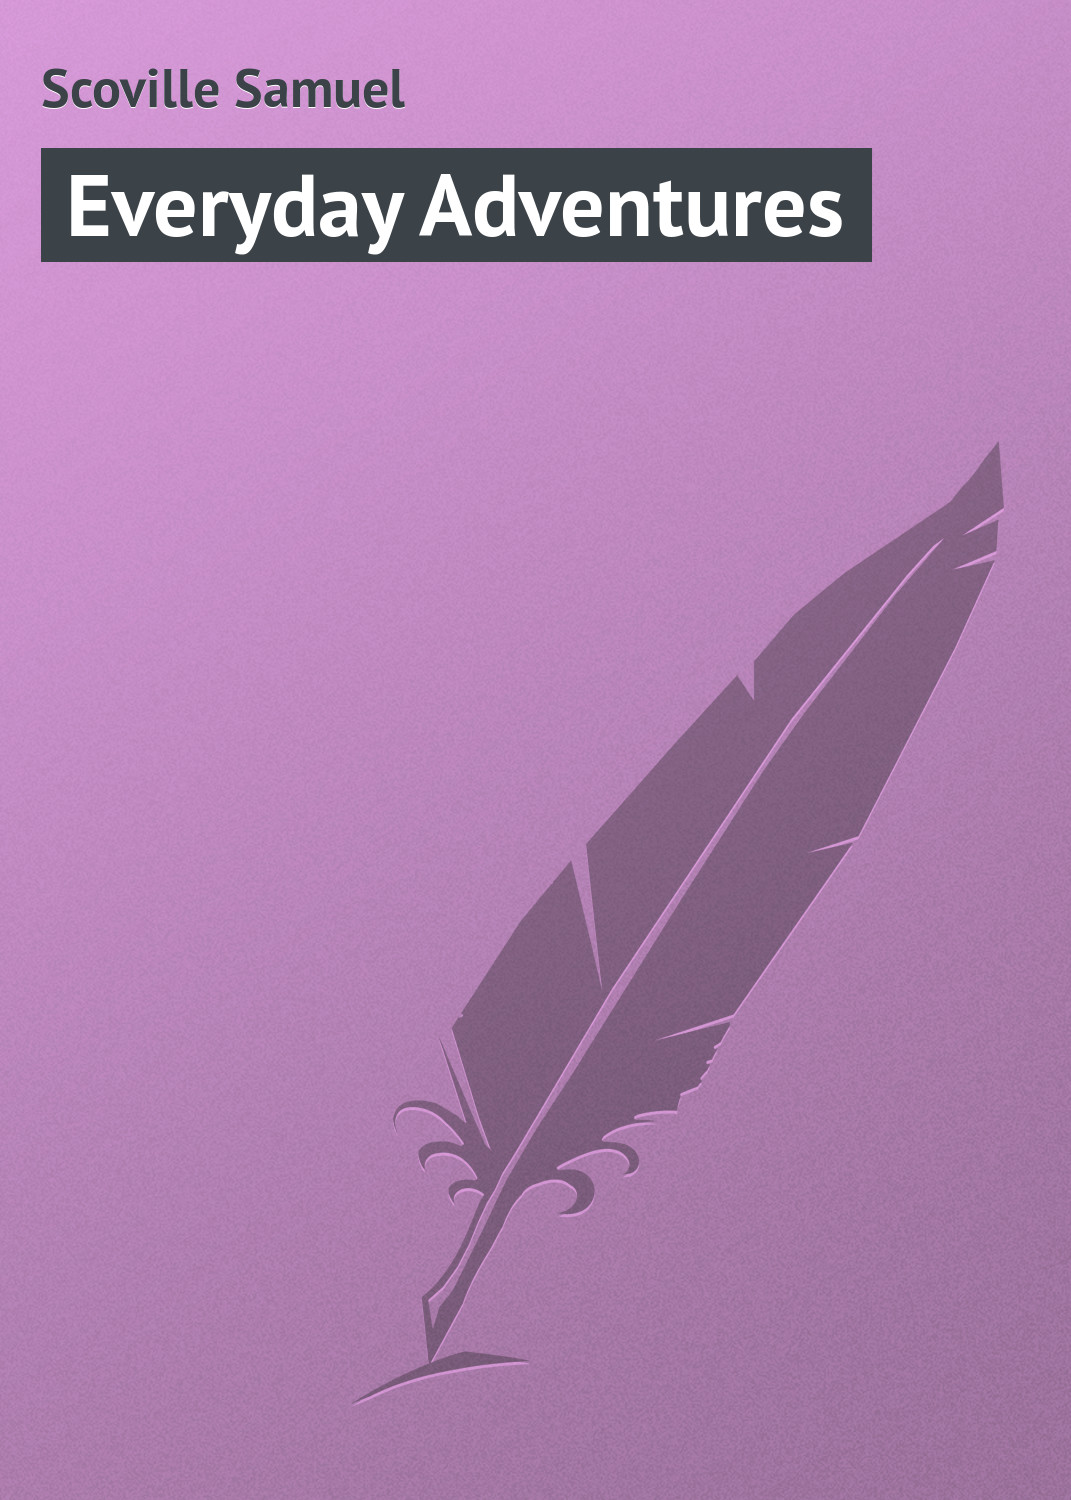 Книга Everyday Adventures из серии , созданная Samuel Scoville, может относится к жанру Зарубежная классика, Иностранные языки. Стоимость электронной книги Everyday Adventures с идентификатором 23160211 составляет 5.99 руб.